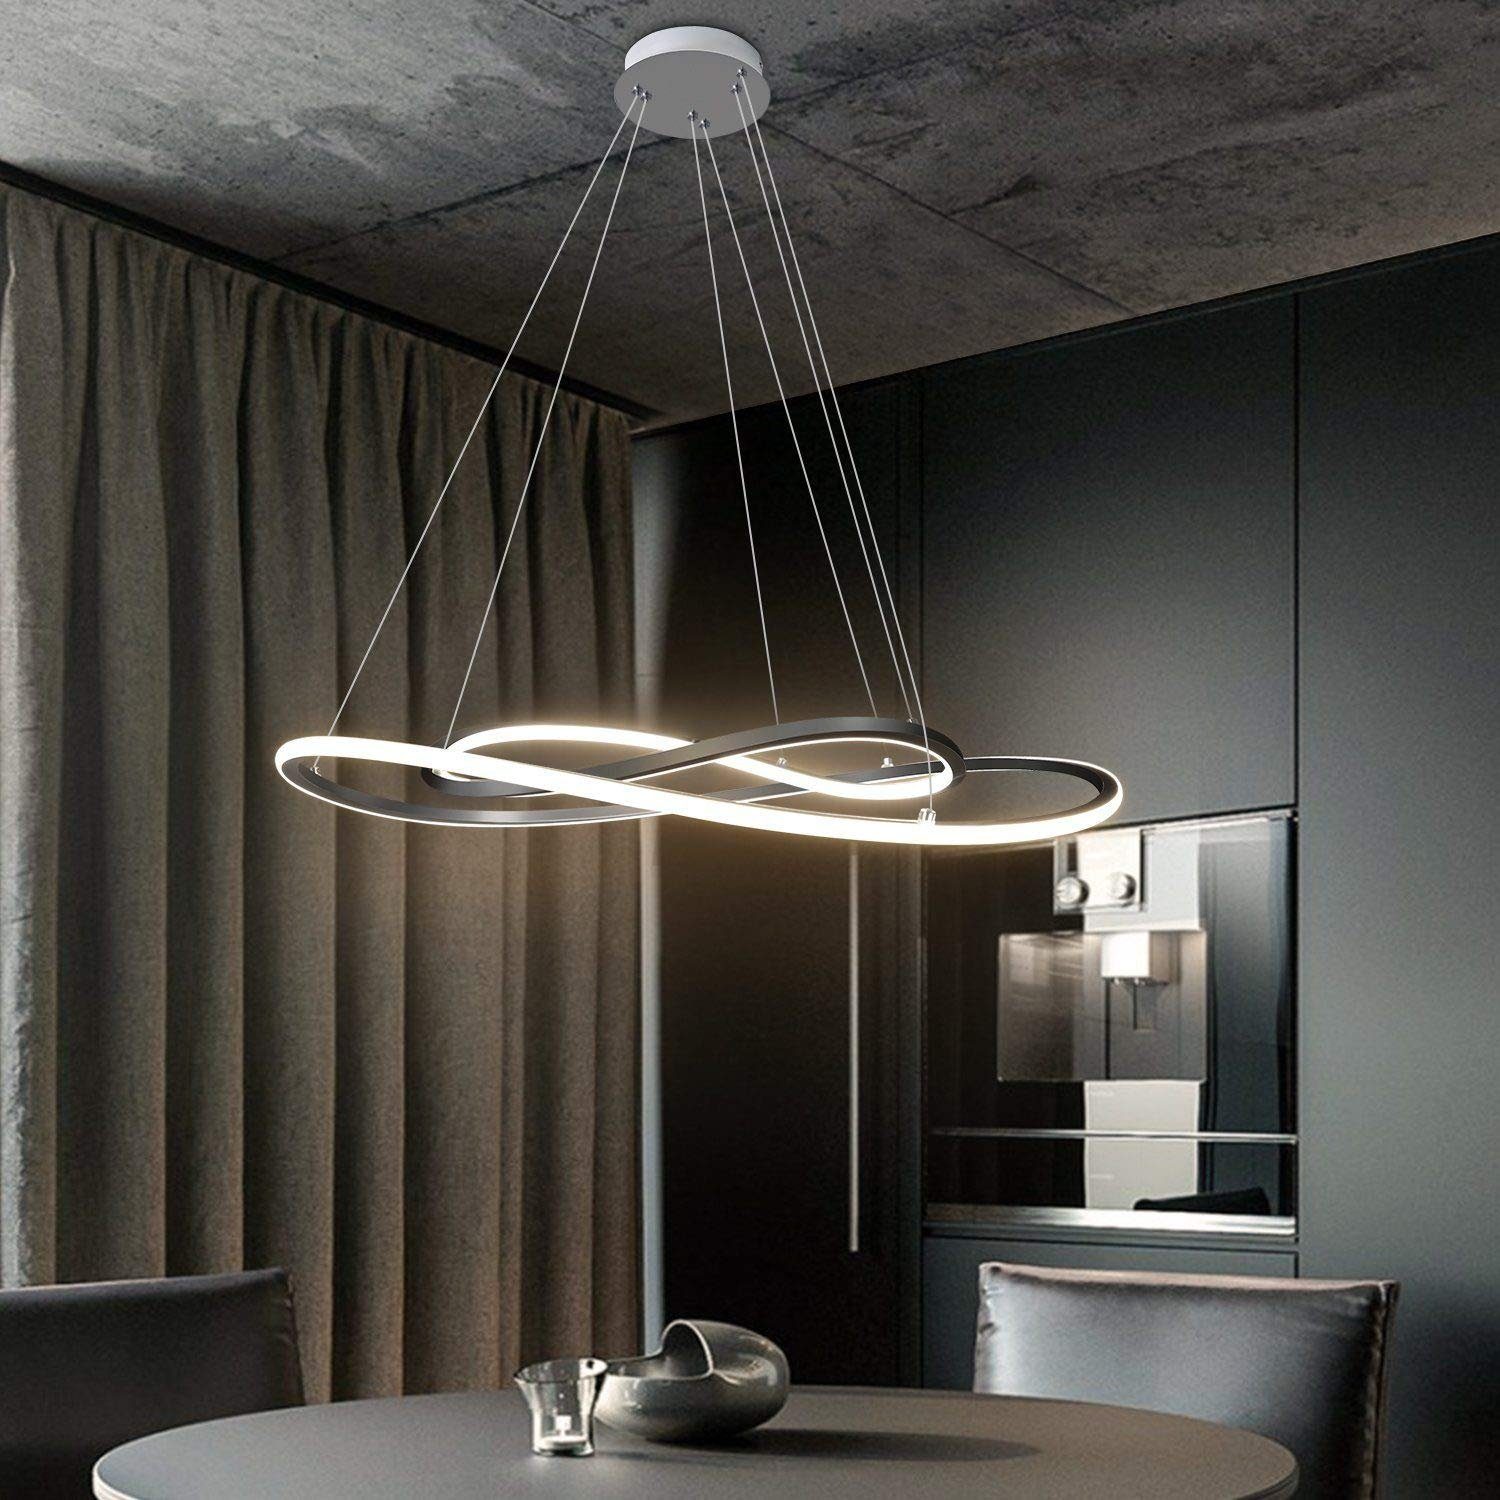 Design LED Pendellampe mit Tastdimmer Hänge Leuchte Ess Wohn Schlaf Zimmer Lampe 